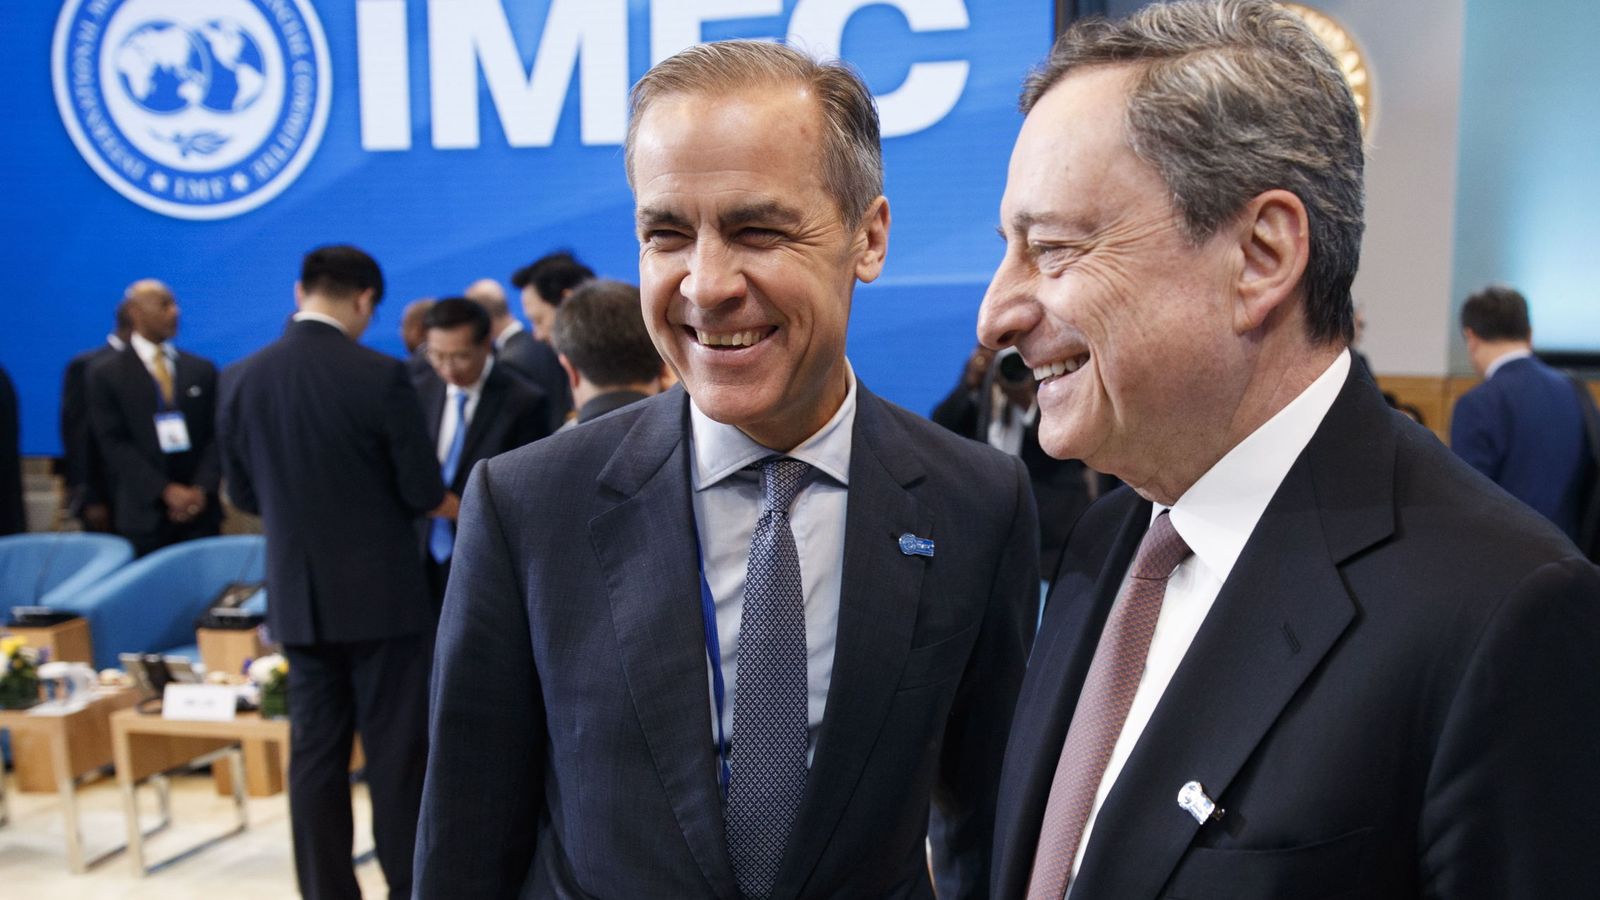 Foto: El presidente del BCE, Mario Draghi, jutno a Mark Carney, gobernador del Banco de Inglaterra. (Reuters)